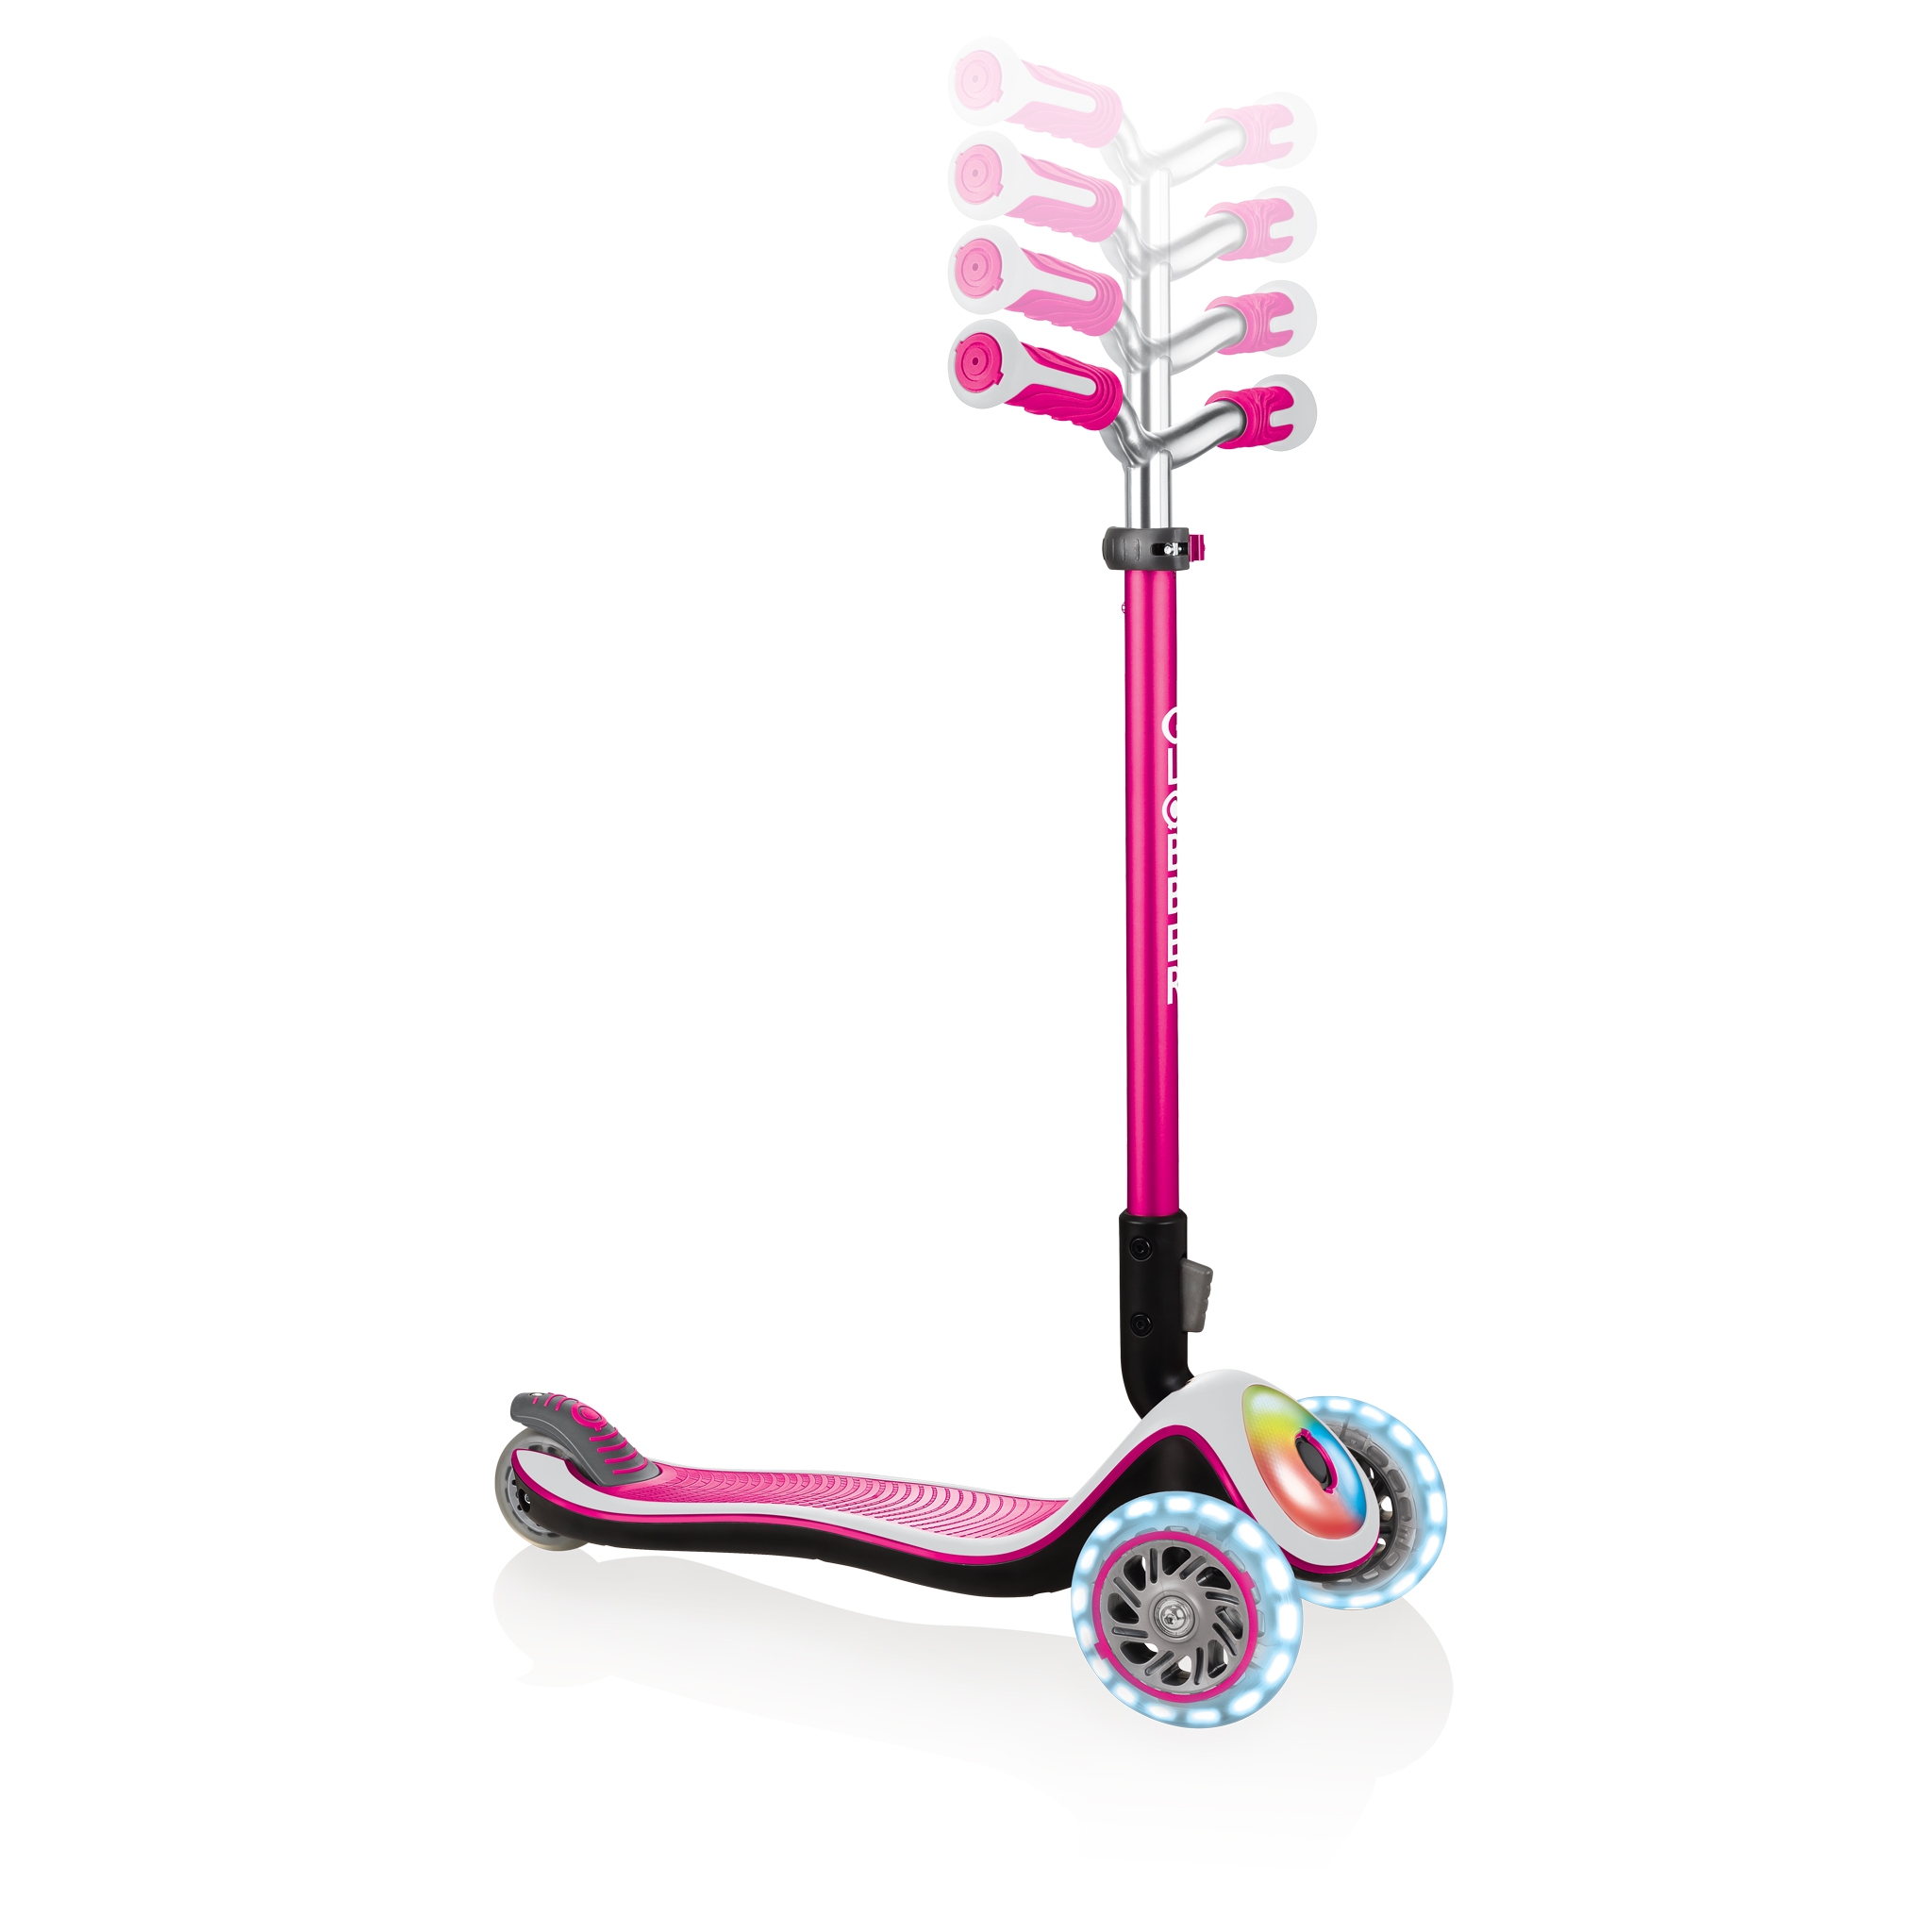 Globber-ELITE-PRIME-best-3-wheel-foldable-scooter-for-kids-with-adjustable-t-bar-pink 1